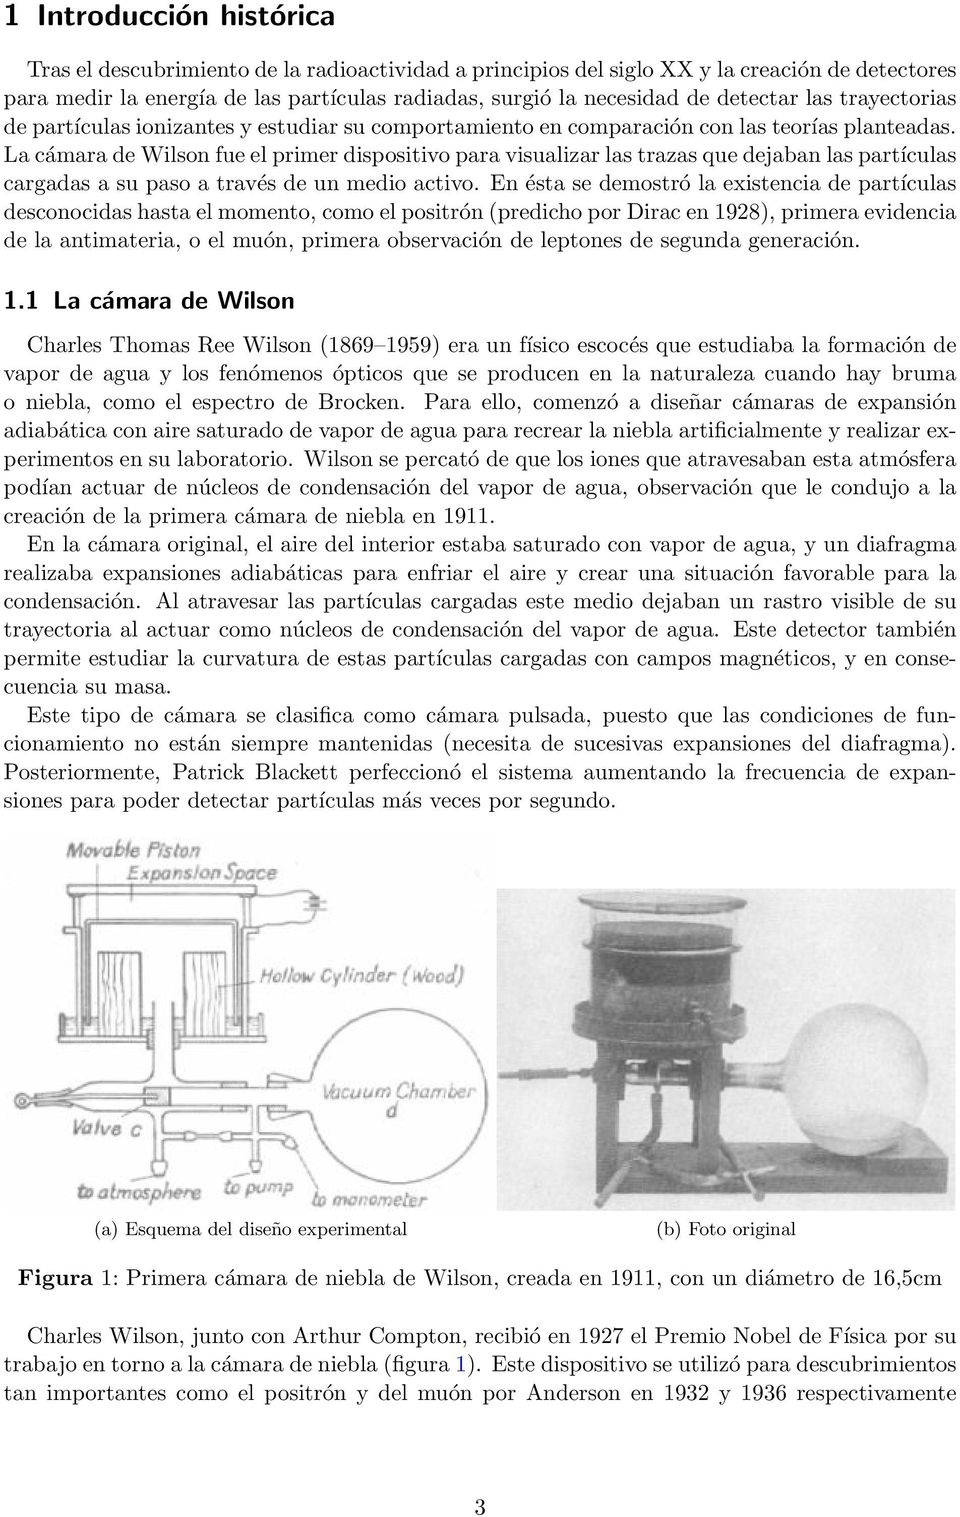 La cámara de Wilson fue el primer dispositivo para visualizar las trazas que dejaban las partículas cargadas a su paso a través de un medio activo.